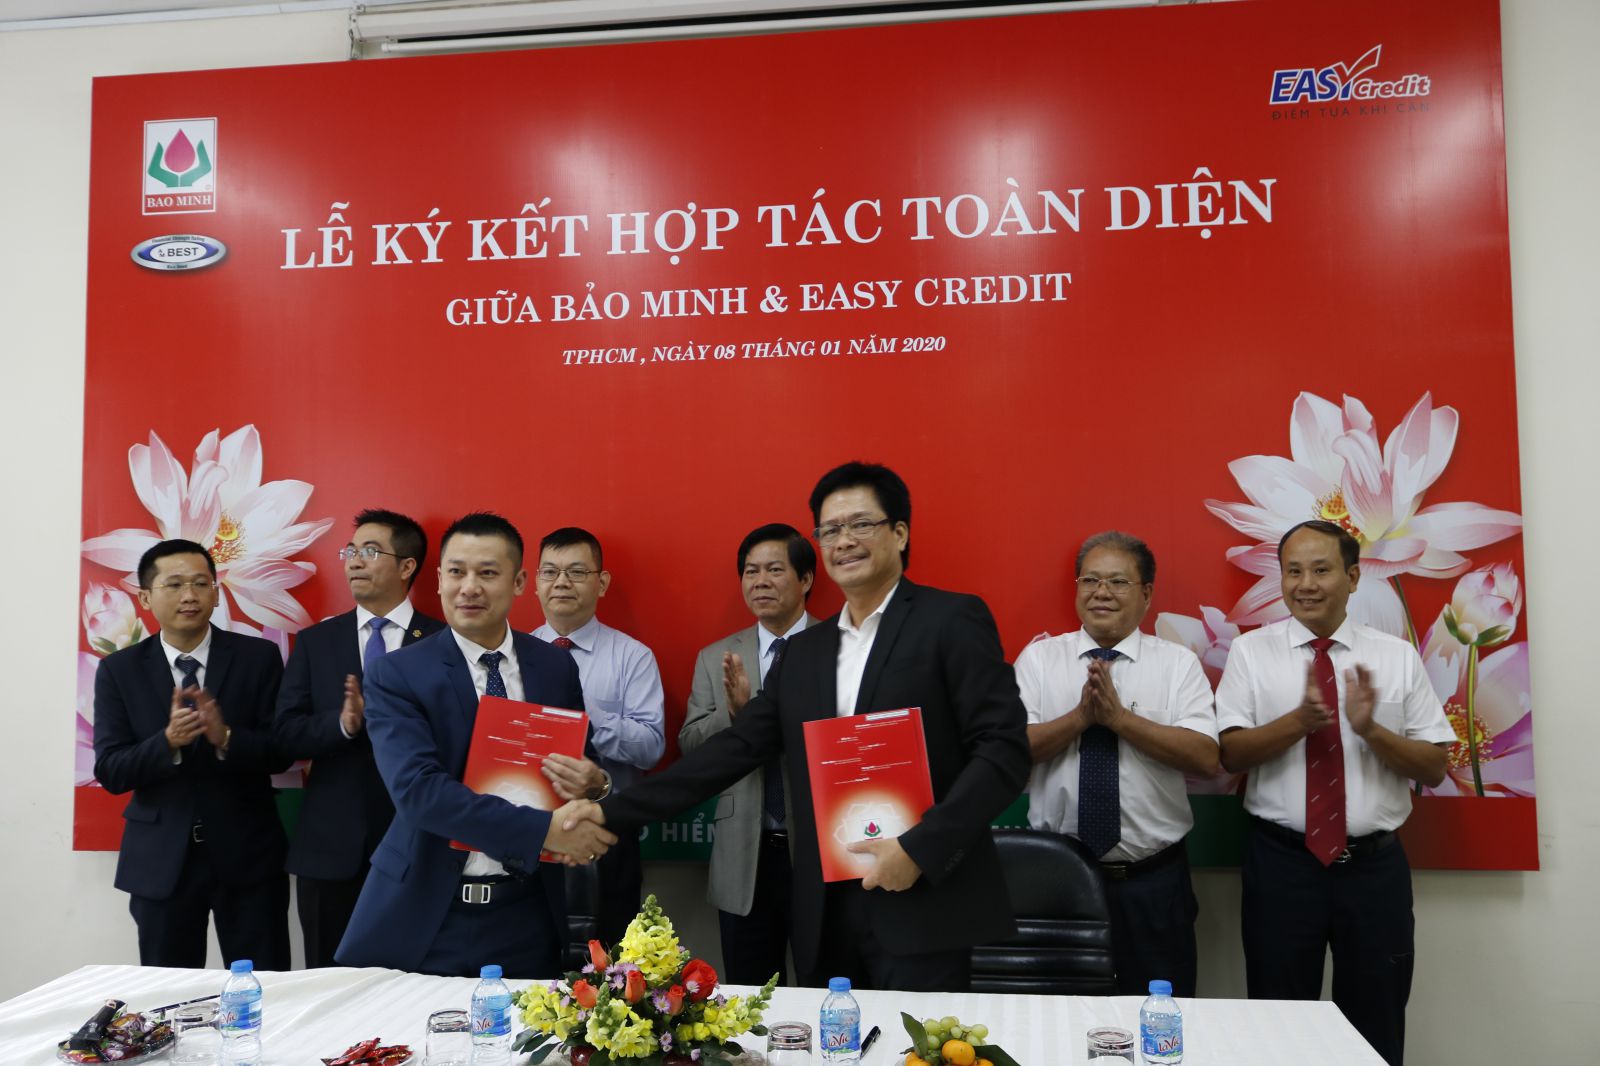 Tổng công ty cổ phần Bảo Minh đã chính thức ký kết hợp tác toàn diện với Easy Credit